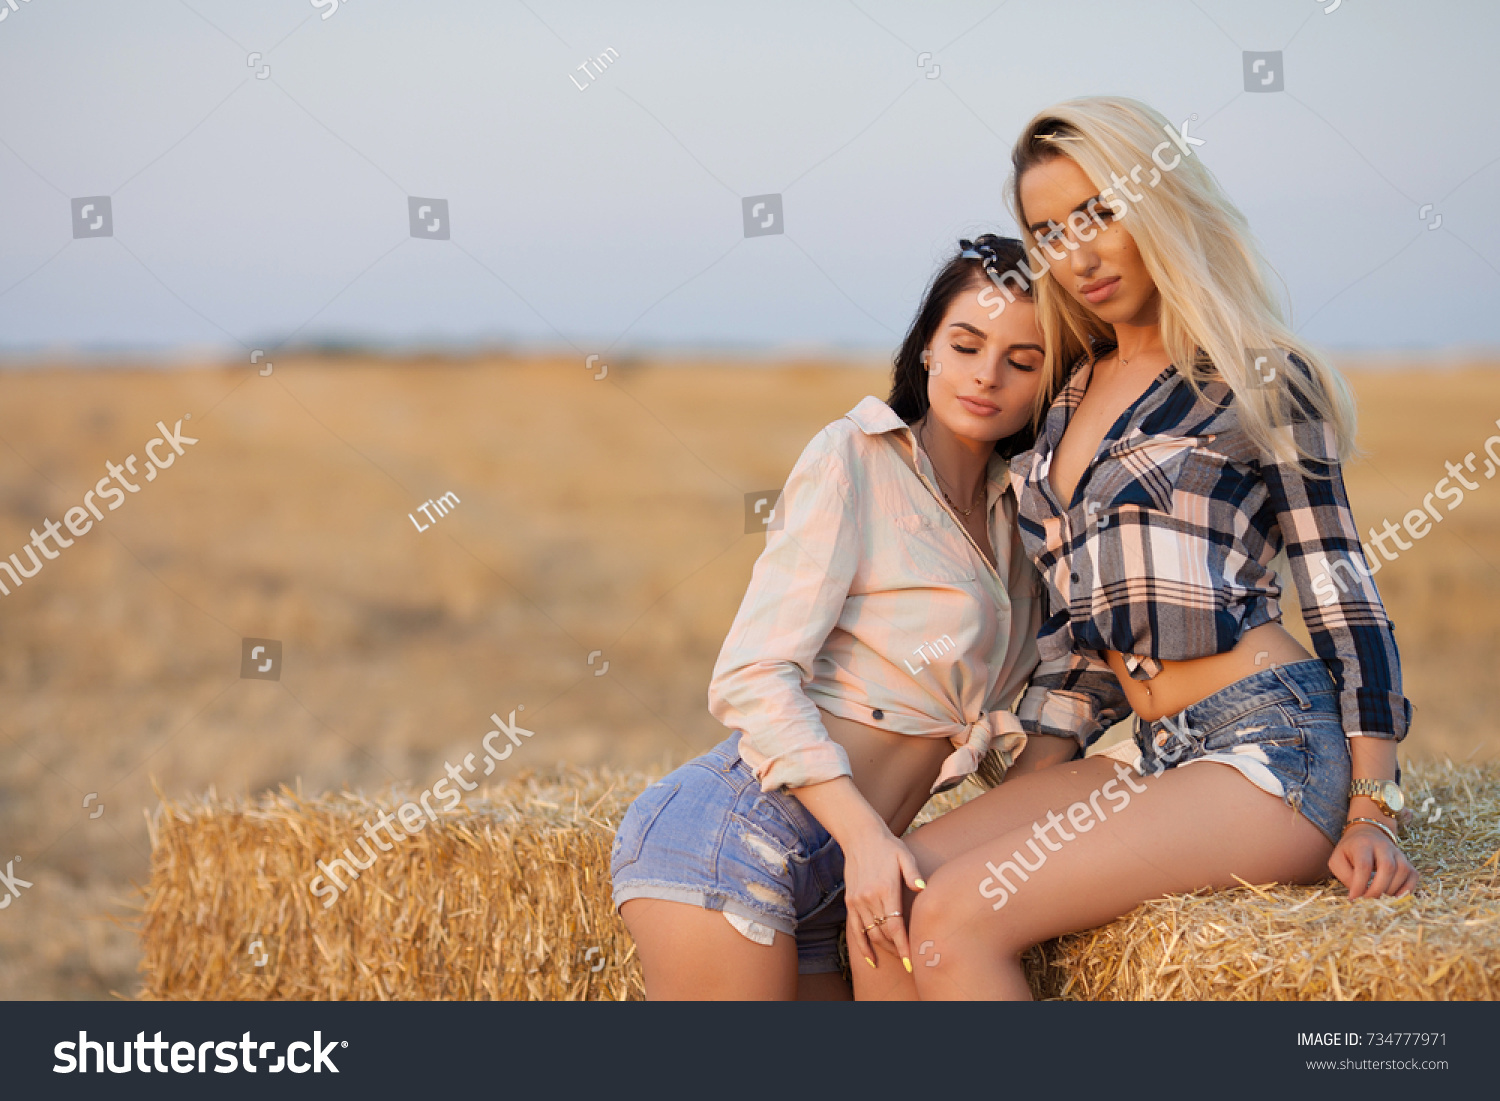 Lesbian Cowgirls